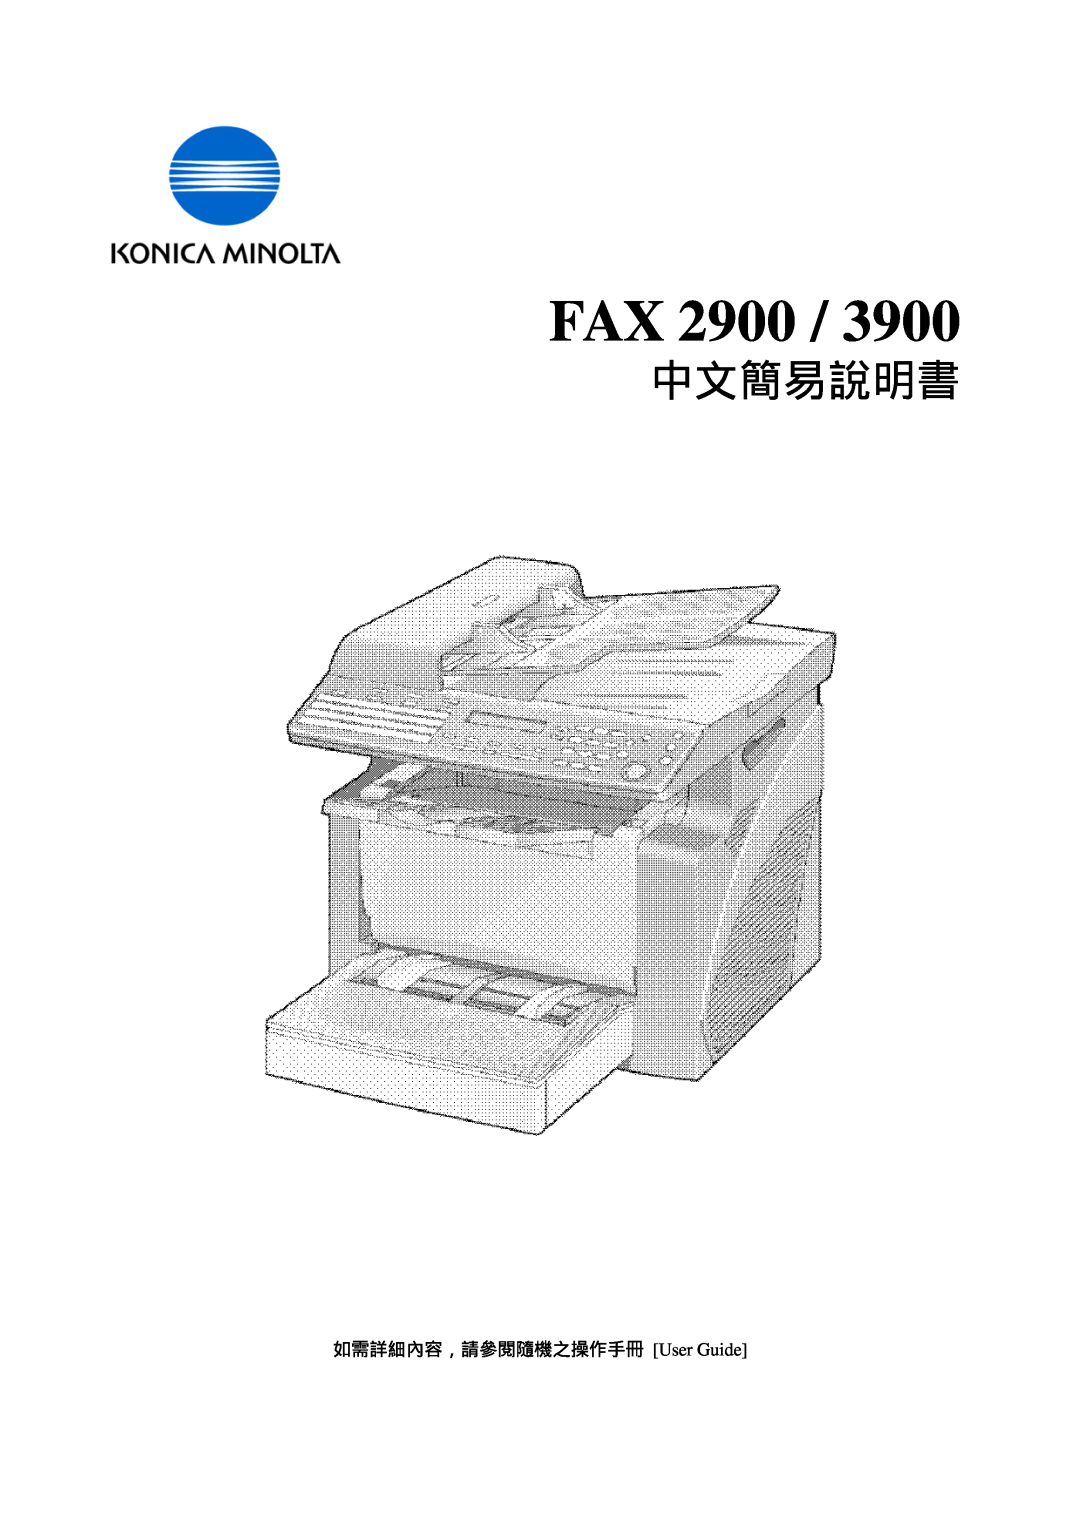 Konica Minolta 3900, 2900 manual Fax, User Guide 